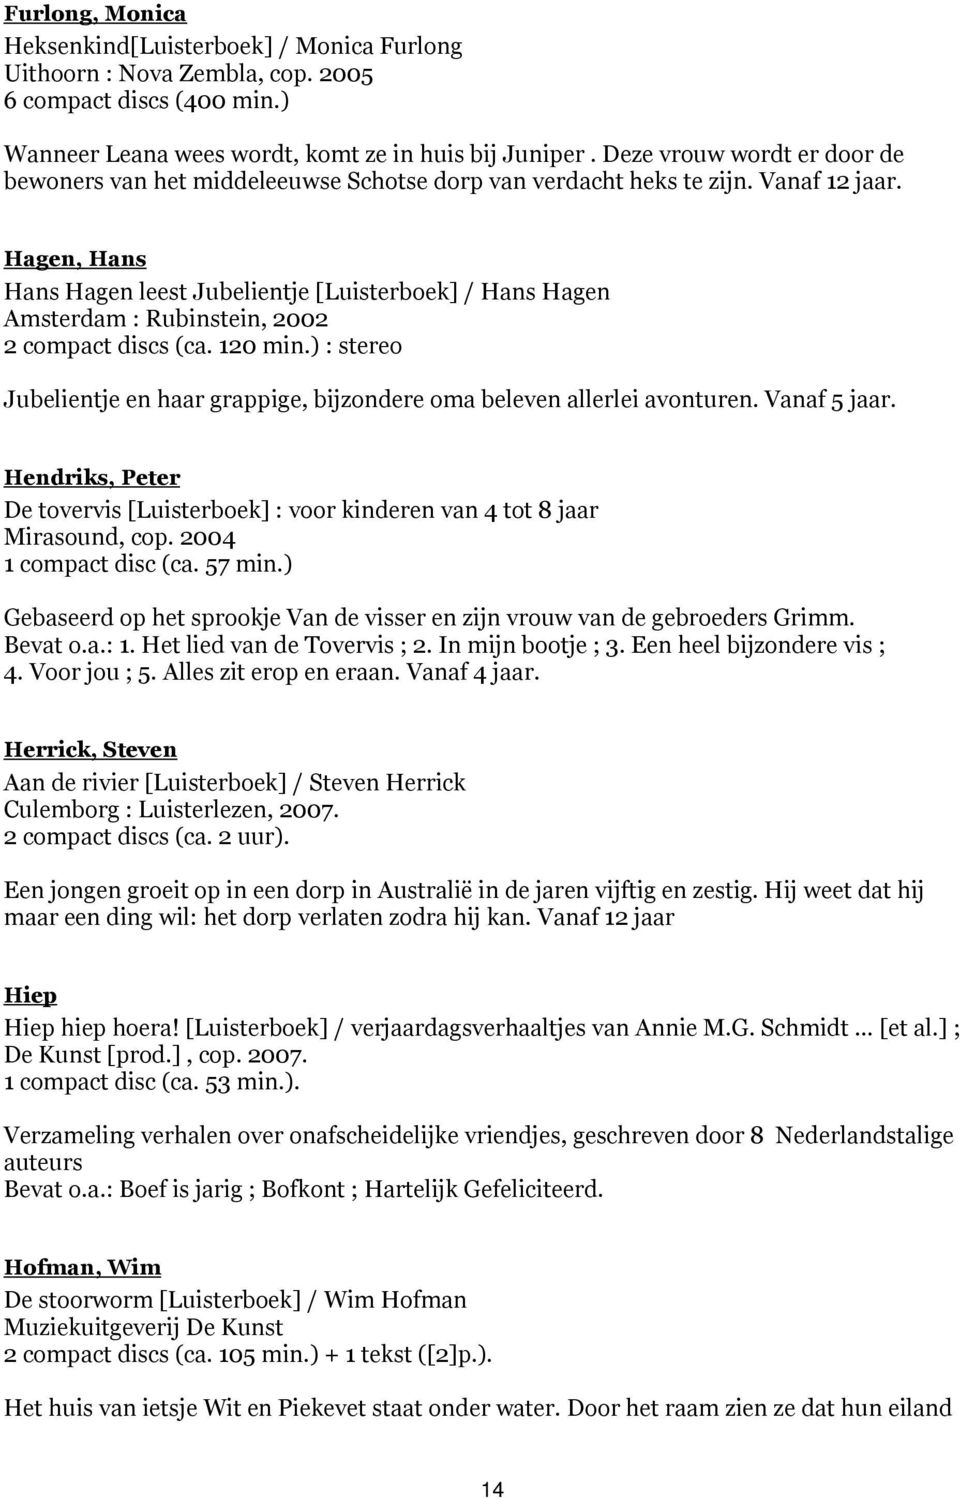 Hagen, Hans Hans Hagen leest Jubelientje [Luisterboek] / Hans Hagen Amsterdam : Rubinstein, 2002 2 compact discs (ca. 120 min.